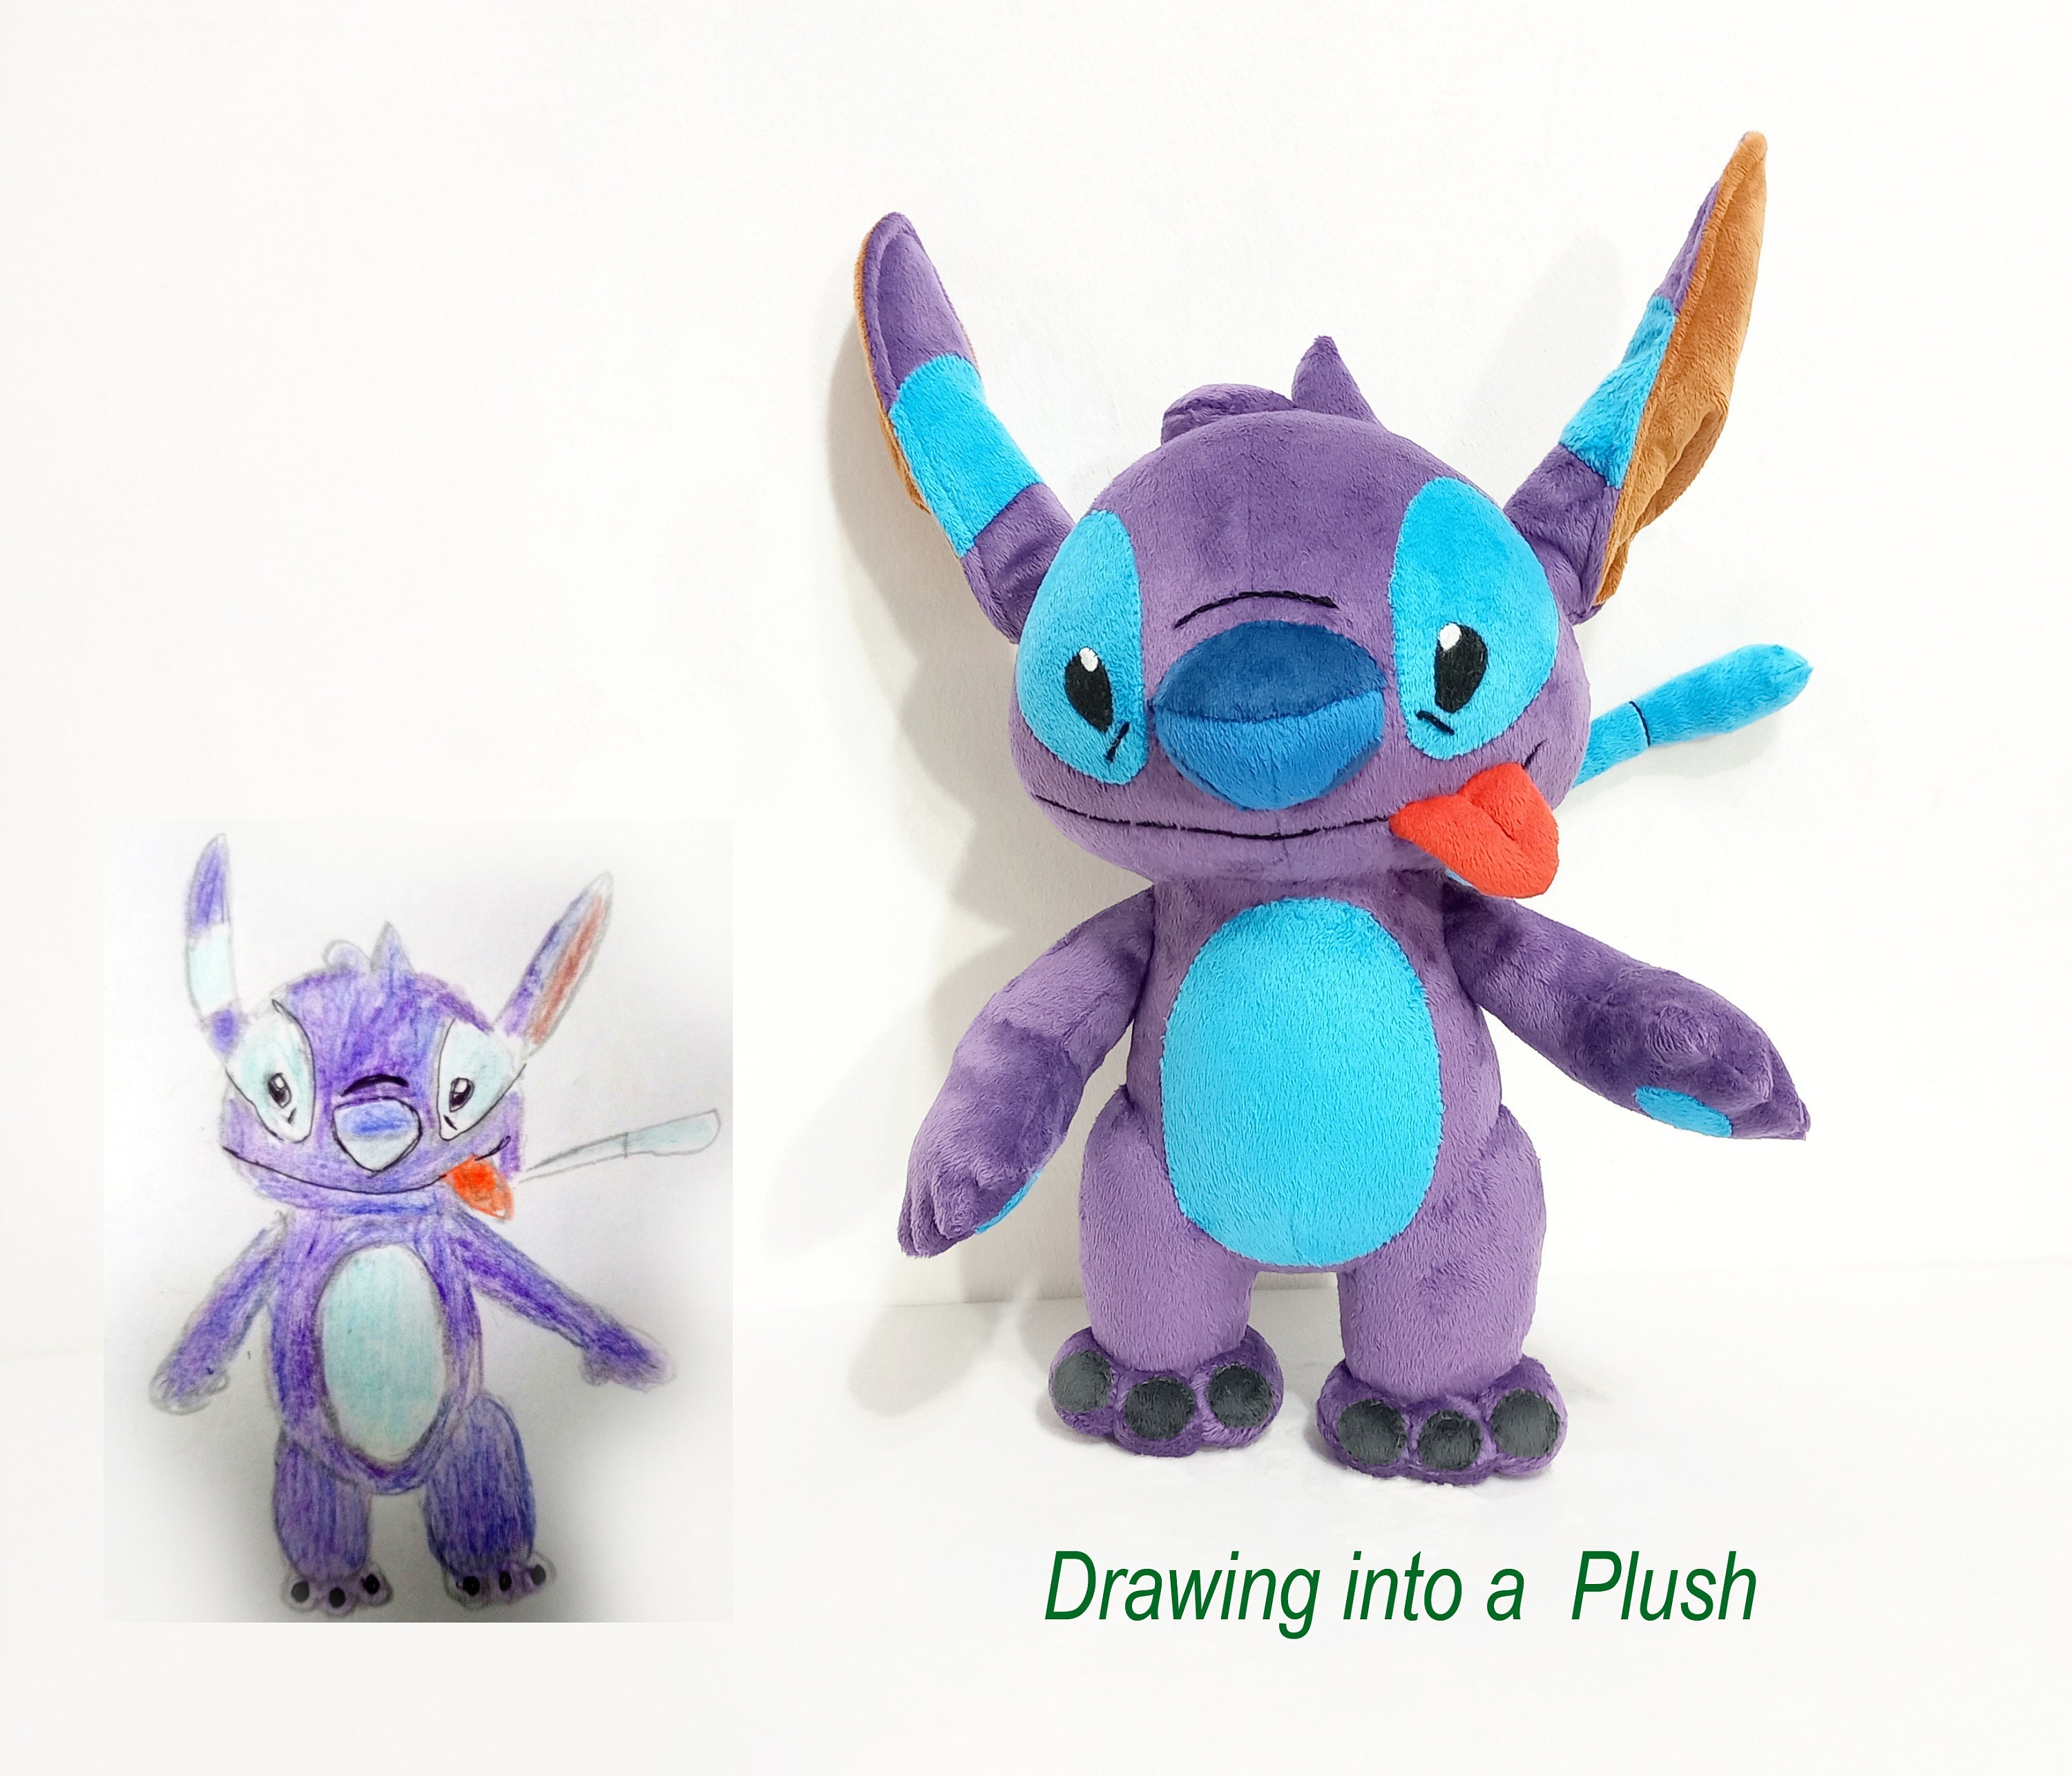 Lilo and Stitch Toys, Plush & More